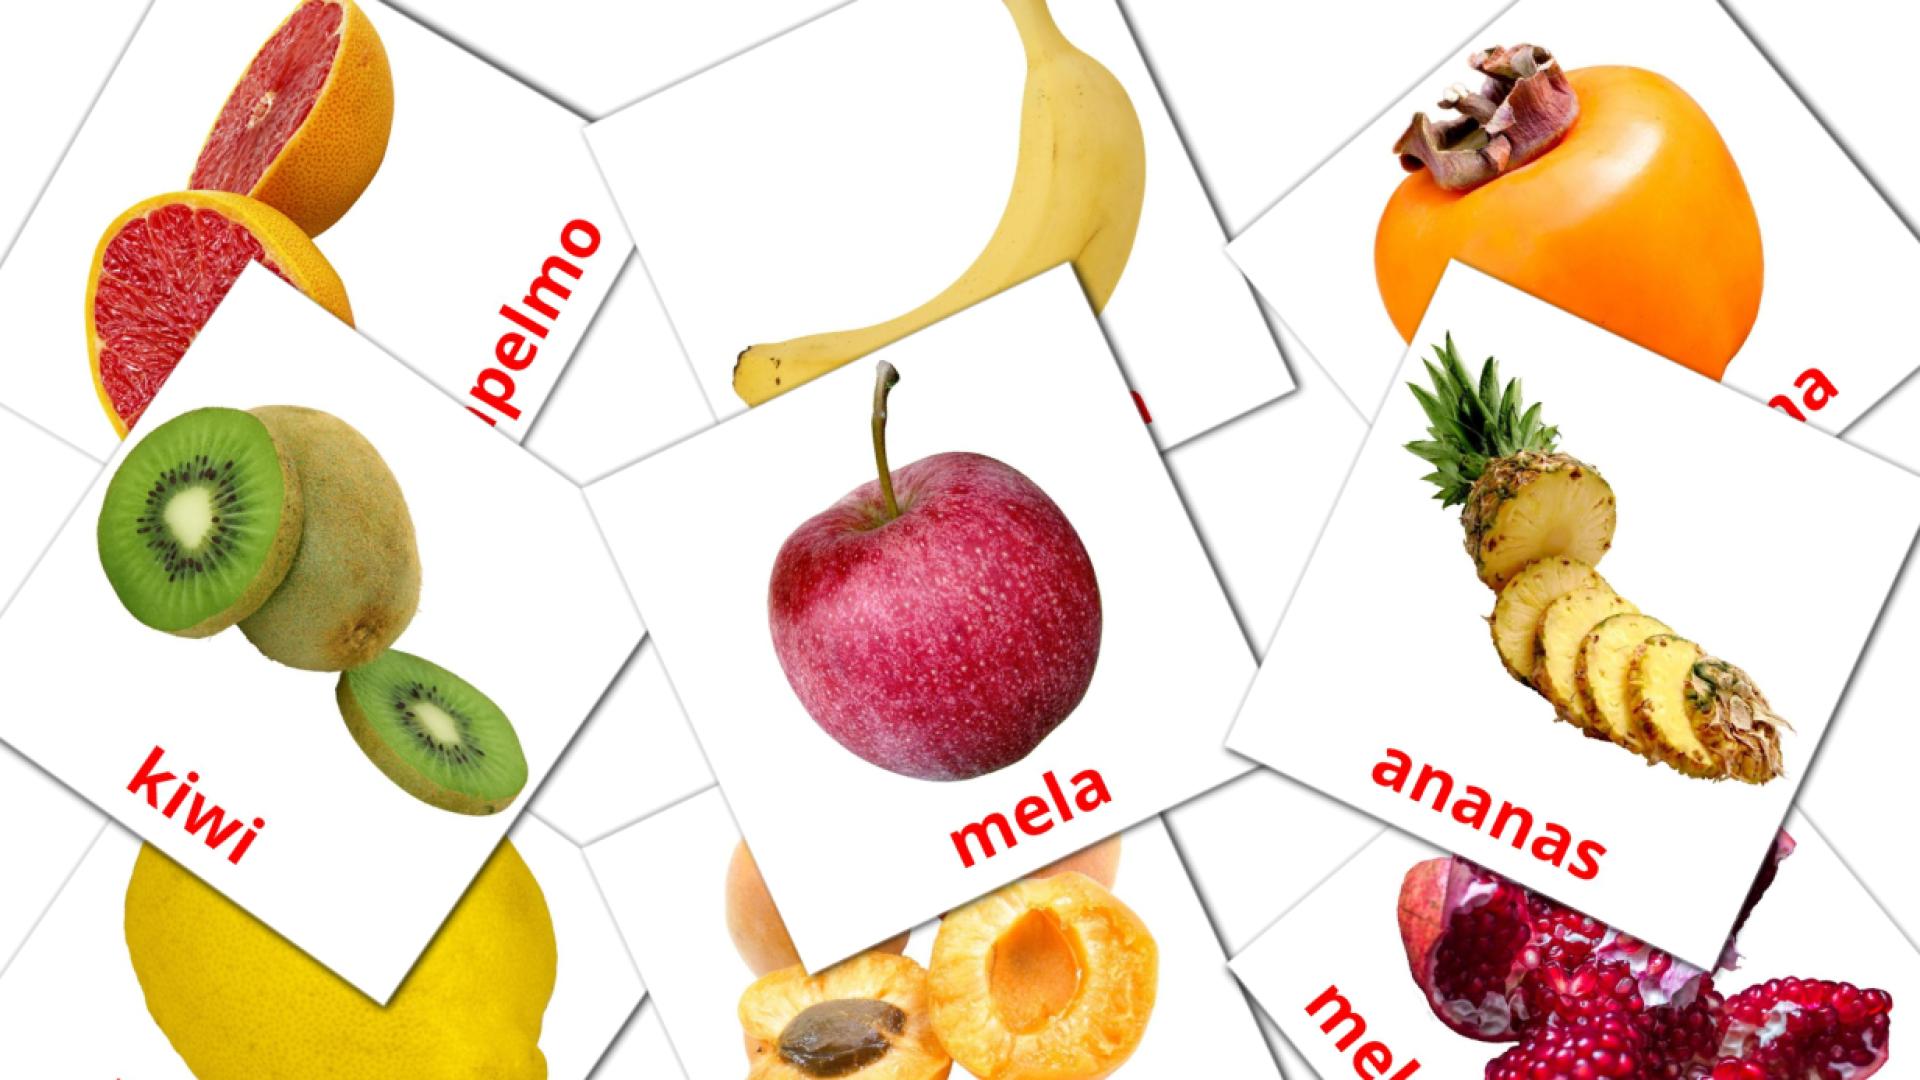 20 tarjetas didacticas de Frutta